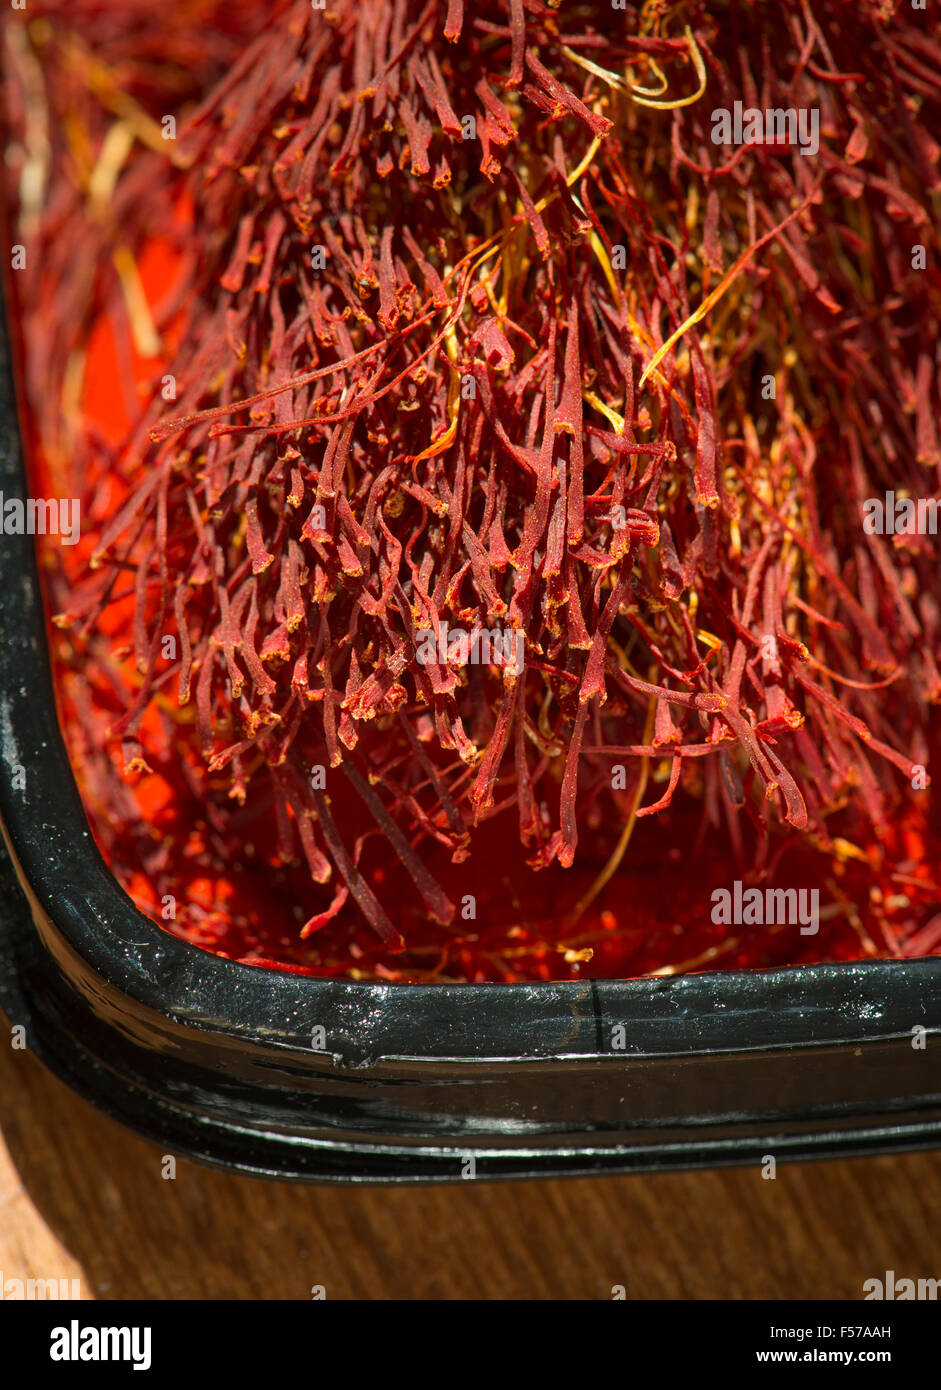 El azafrán en una caja de laca roja. Cerca de especias. Concepto culinario de la cocción. Foto de stock